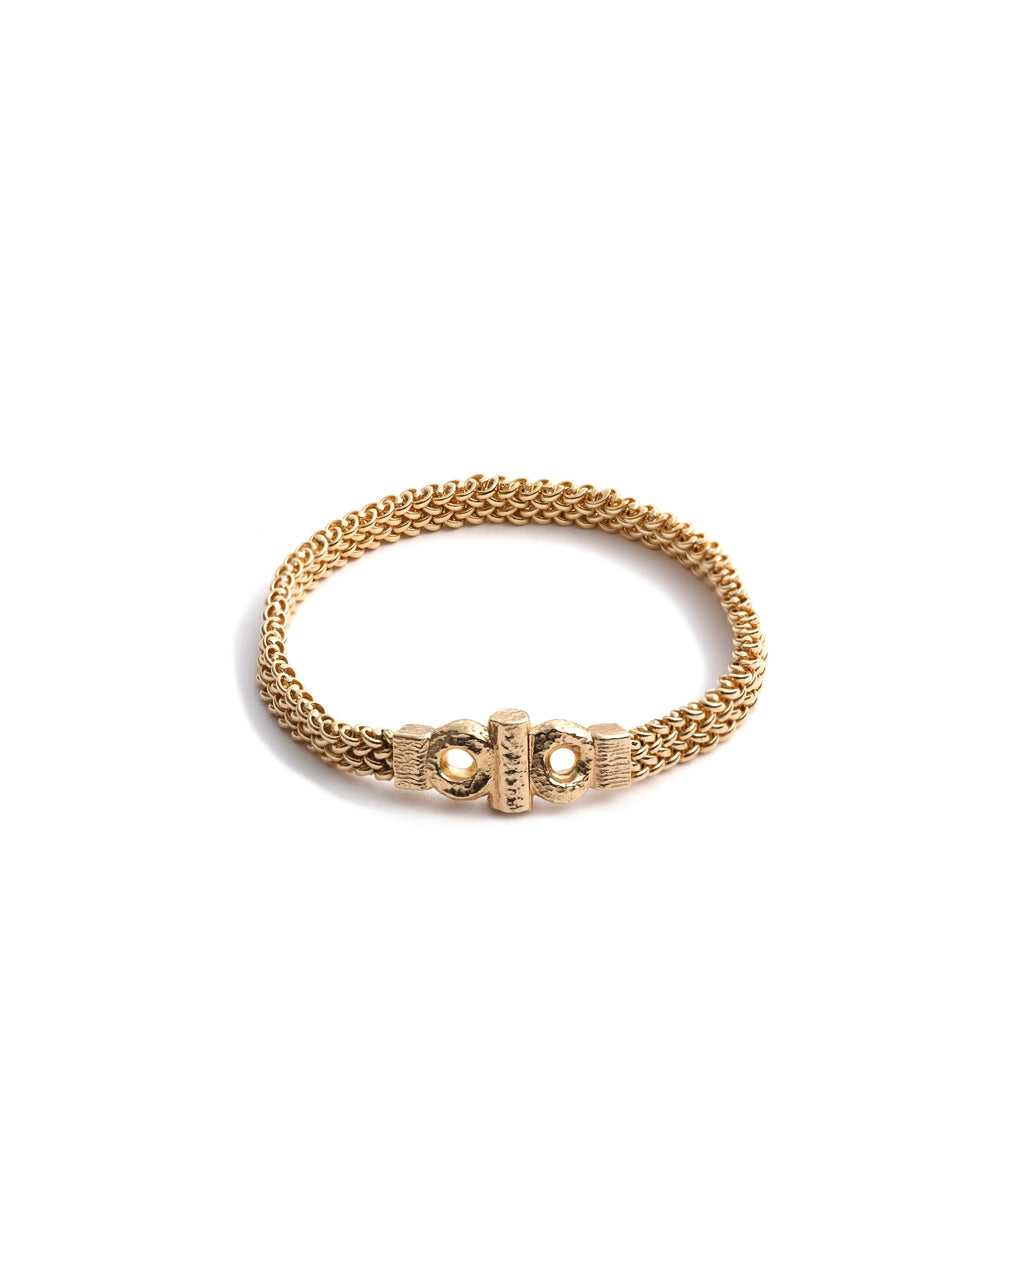 Gold Cuff Bracelet – Folklor